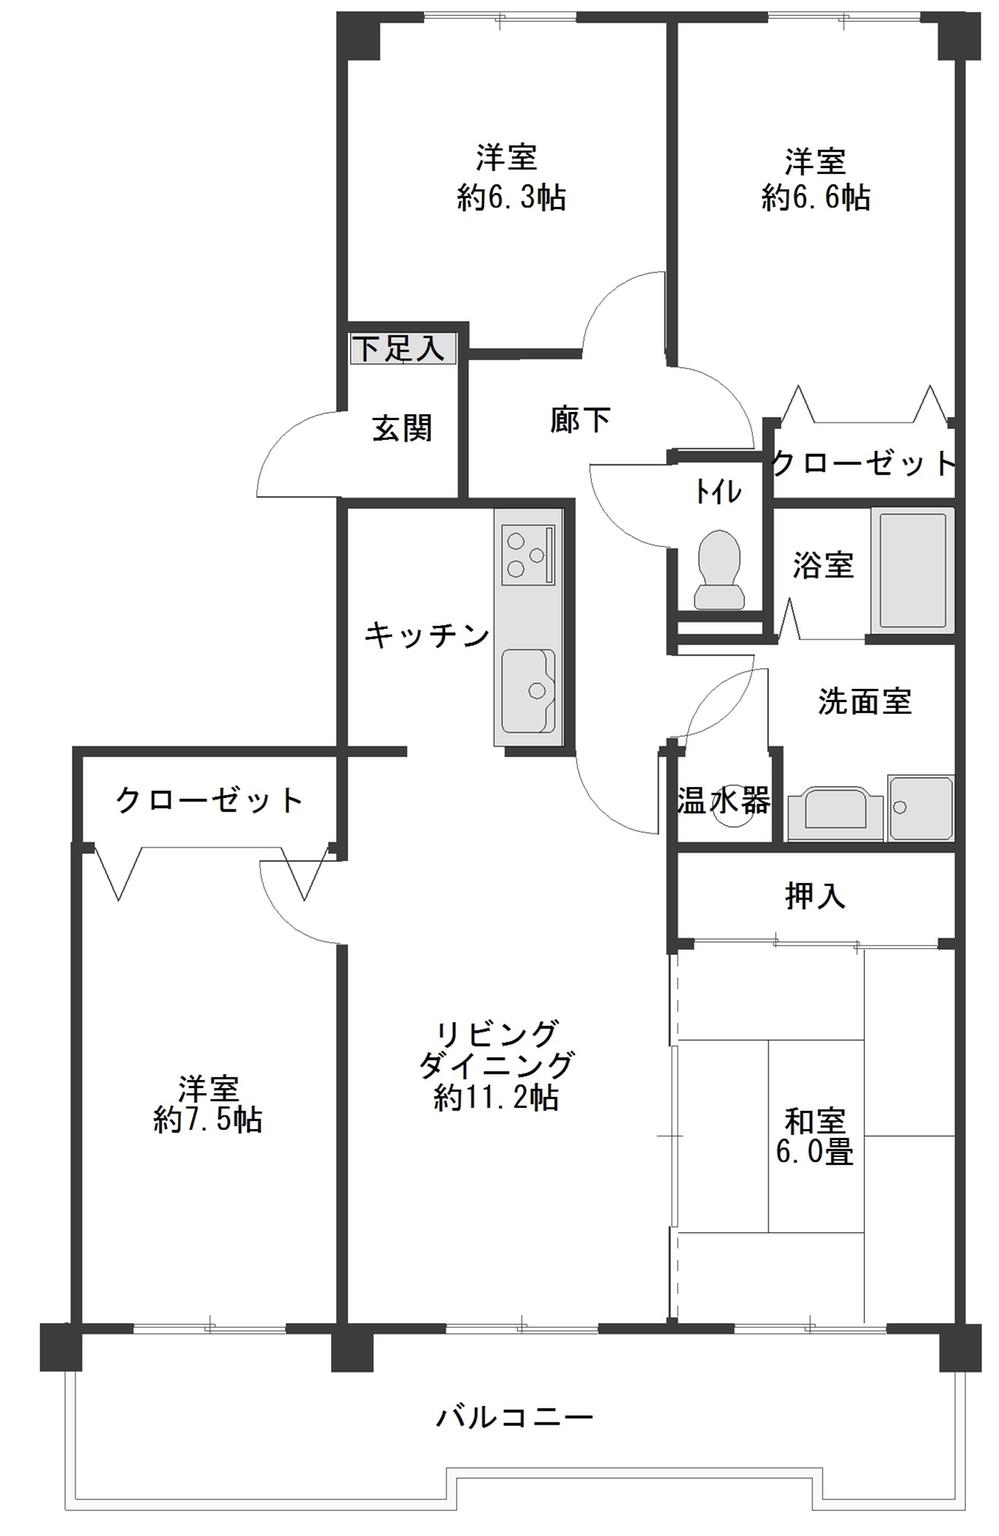 Floor plan. 4LDK, Price 16,900,000 yen, Occupied area 90.14 sq m , Balcony area 13.16 sq m Floor